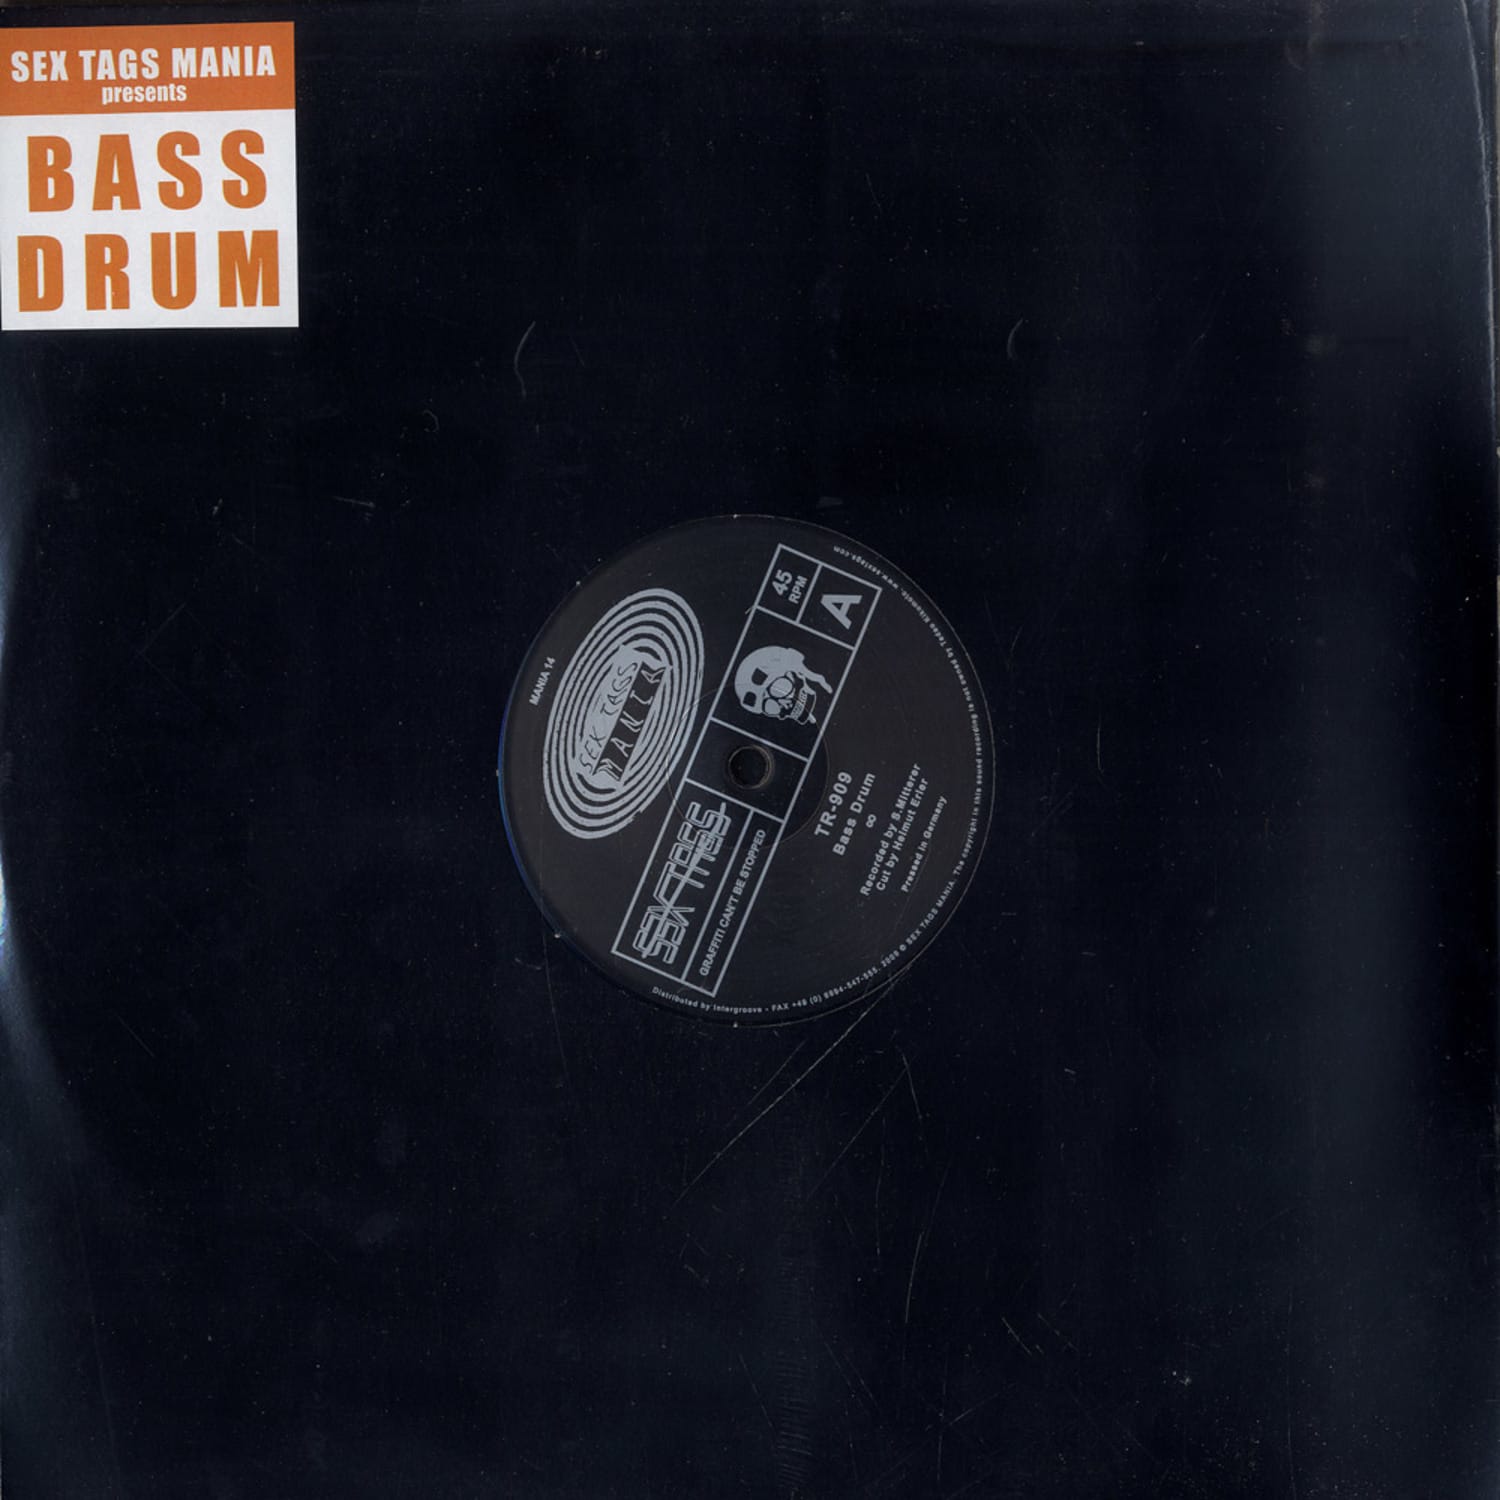 TR-909 - Bass Drum